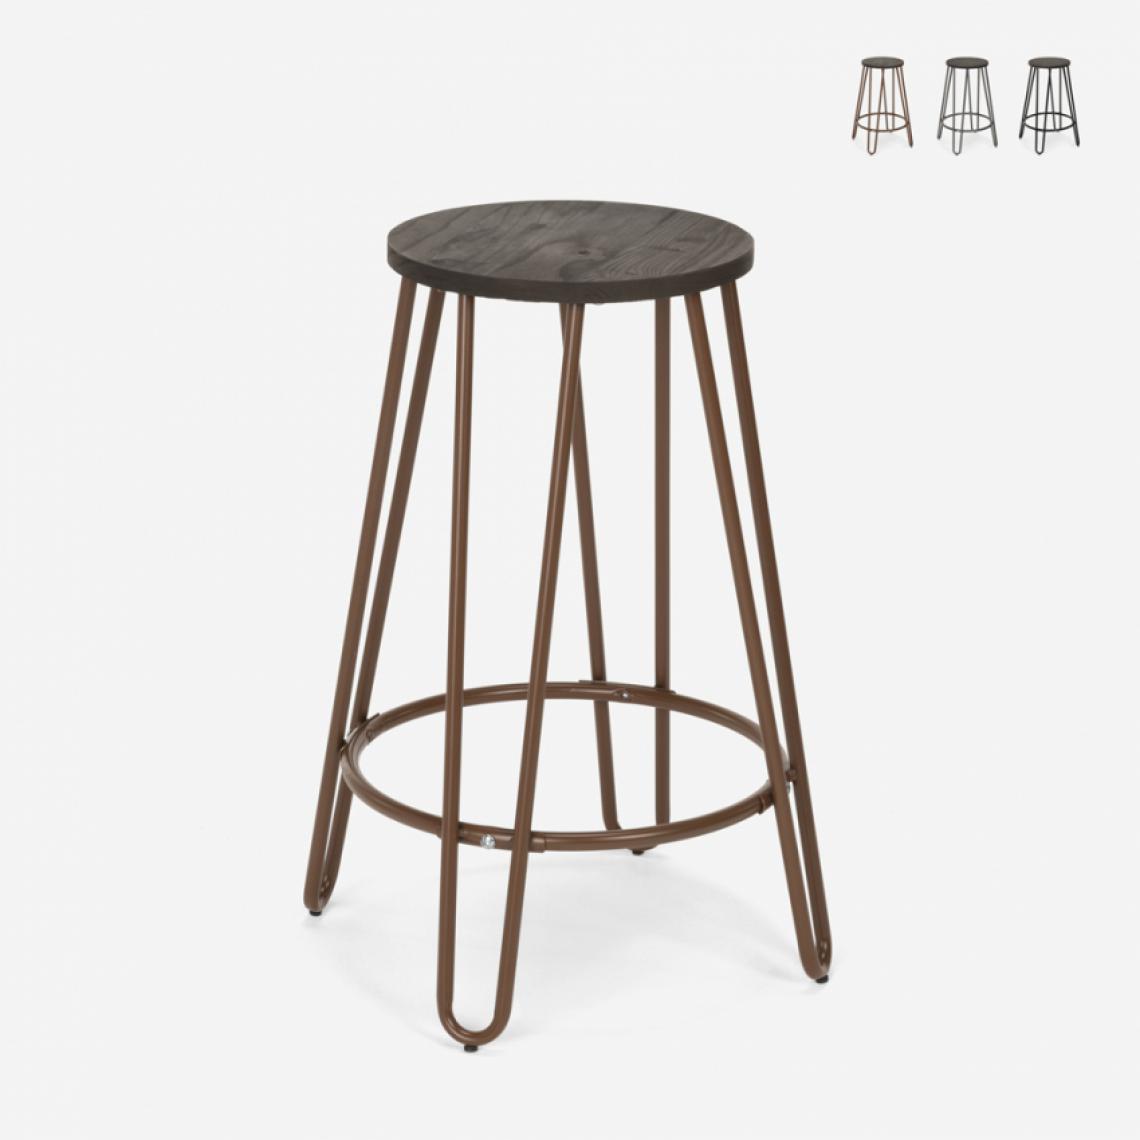 Ahd Amazing Home Design - Tabouret haut design industriel en bois métal pour bars restaurants cuisines Carbon Top, Couleur: Marron - Tabourets